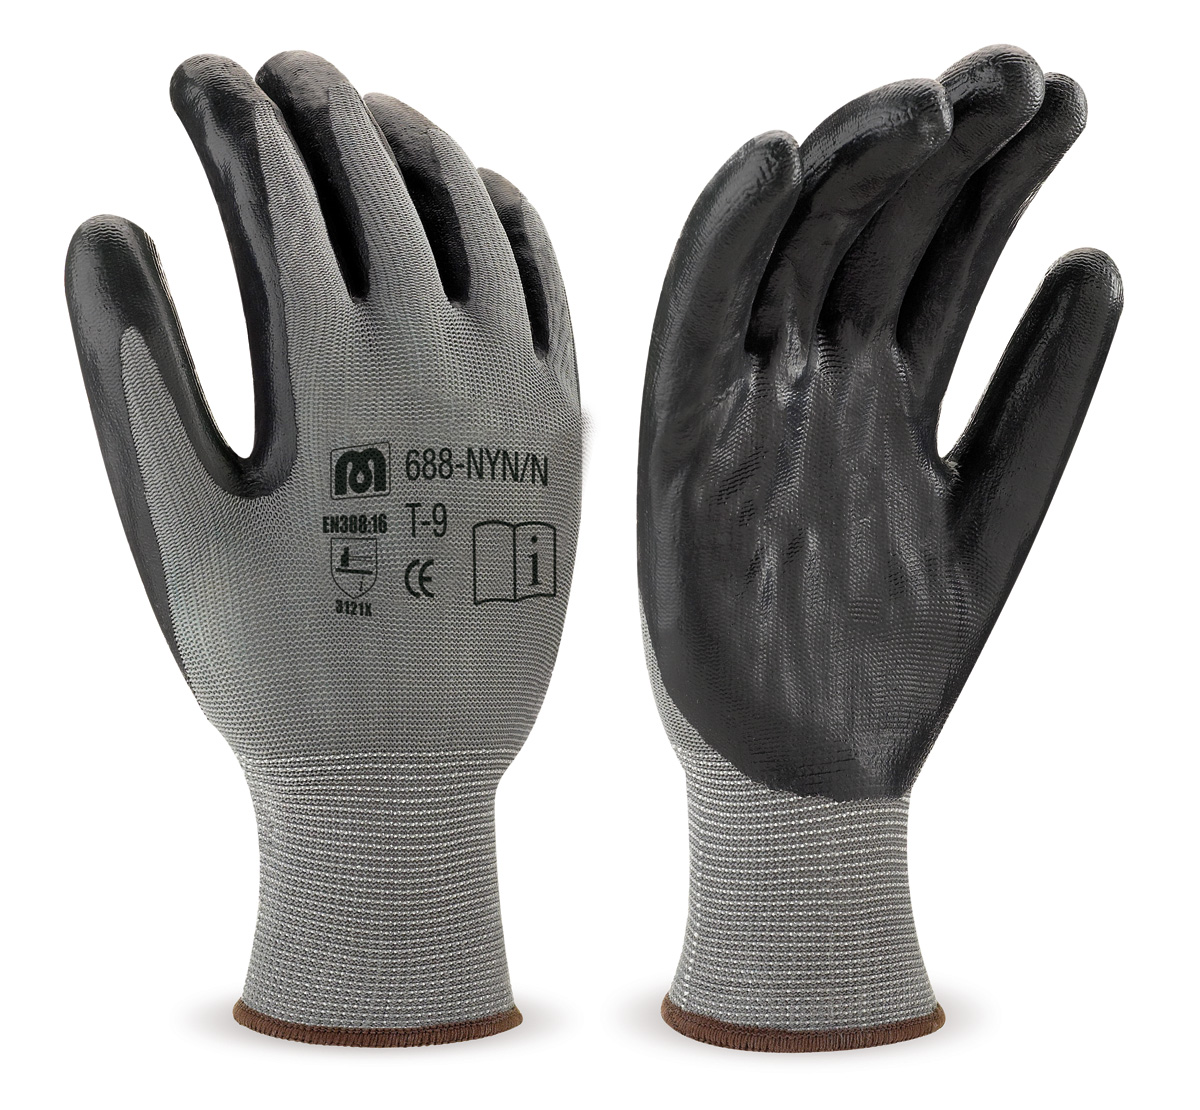 688-NYL Gants de Travail Nylon Gant polyester noir avec revêtement latex coloris noir